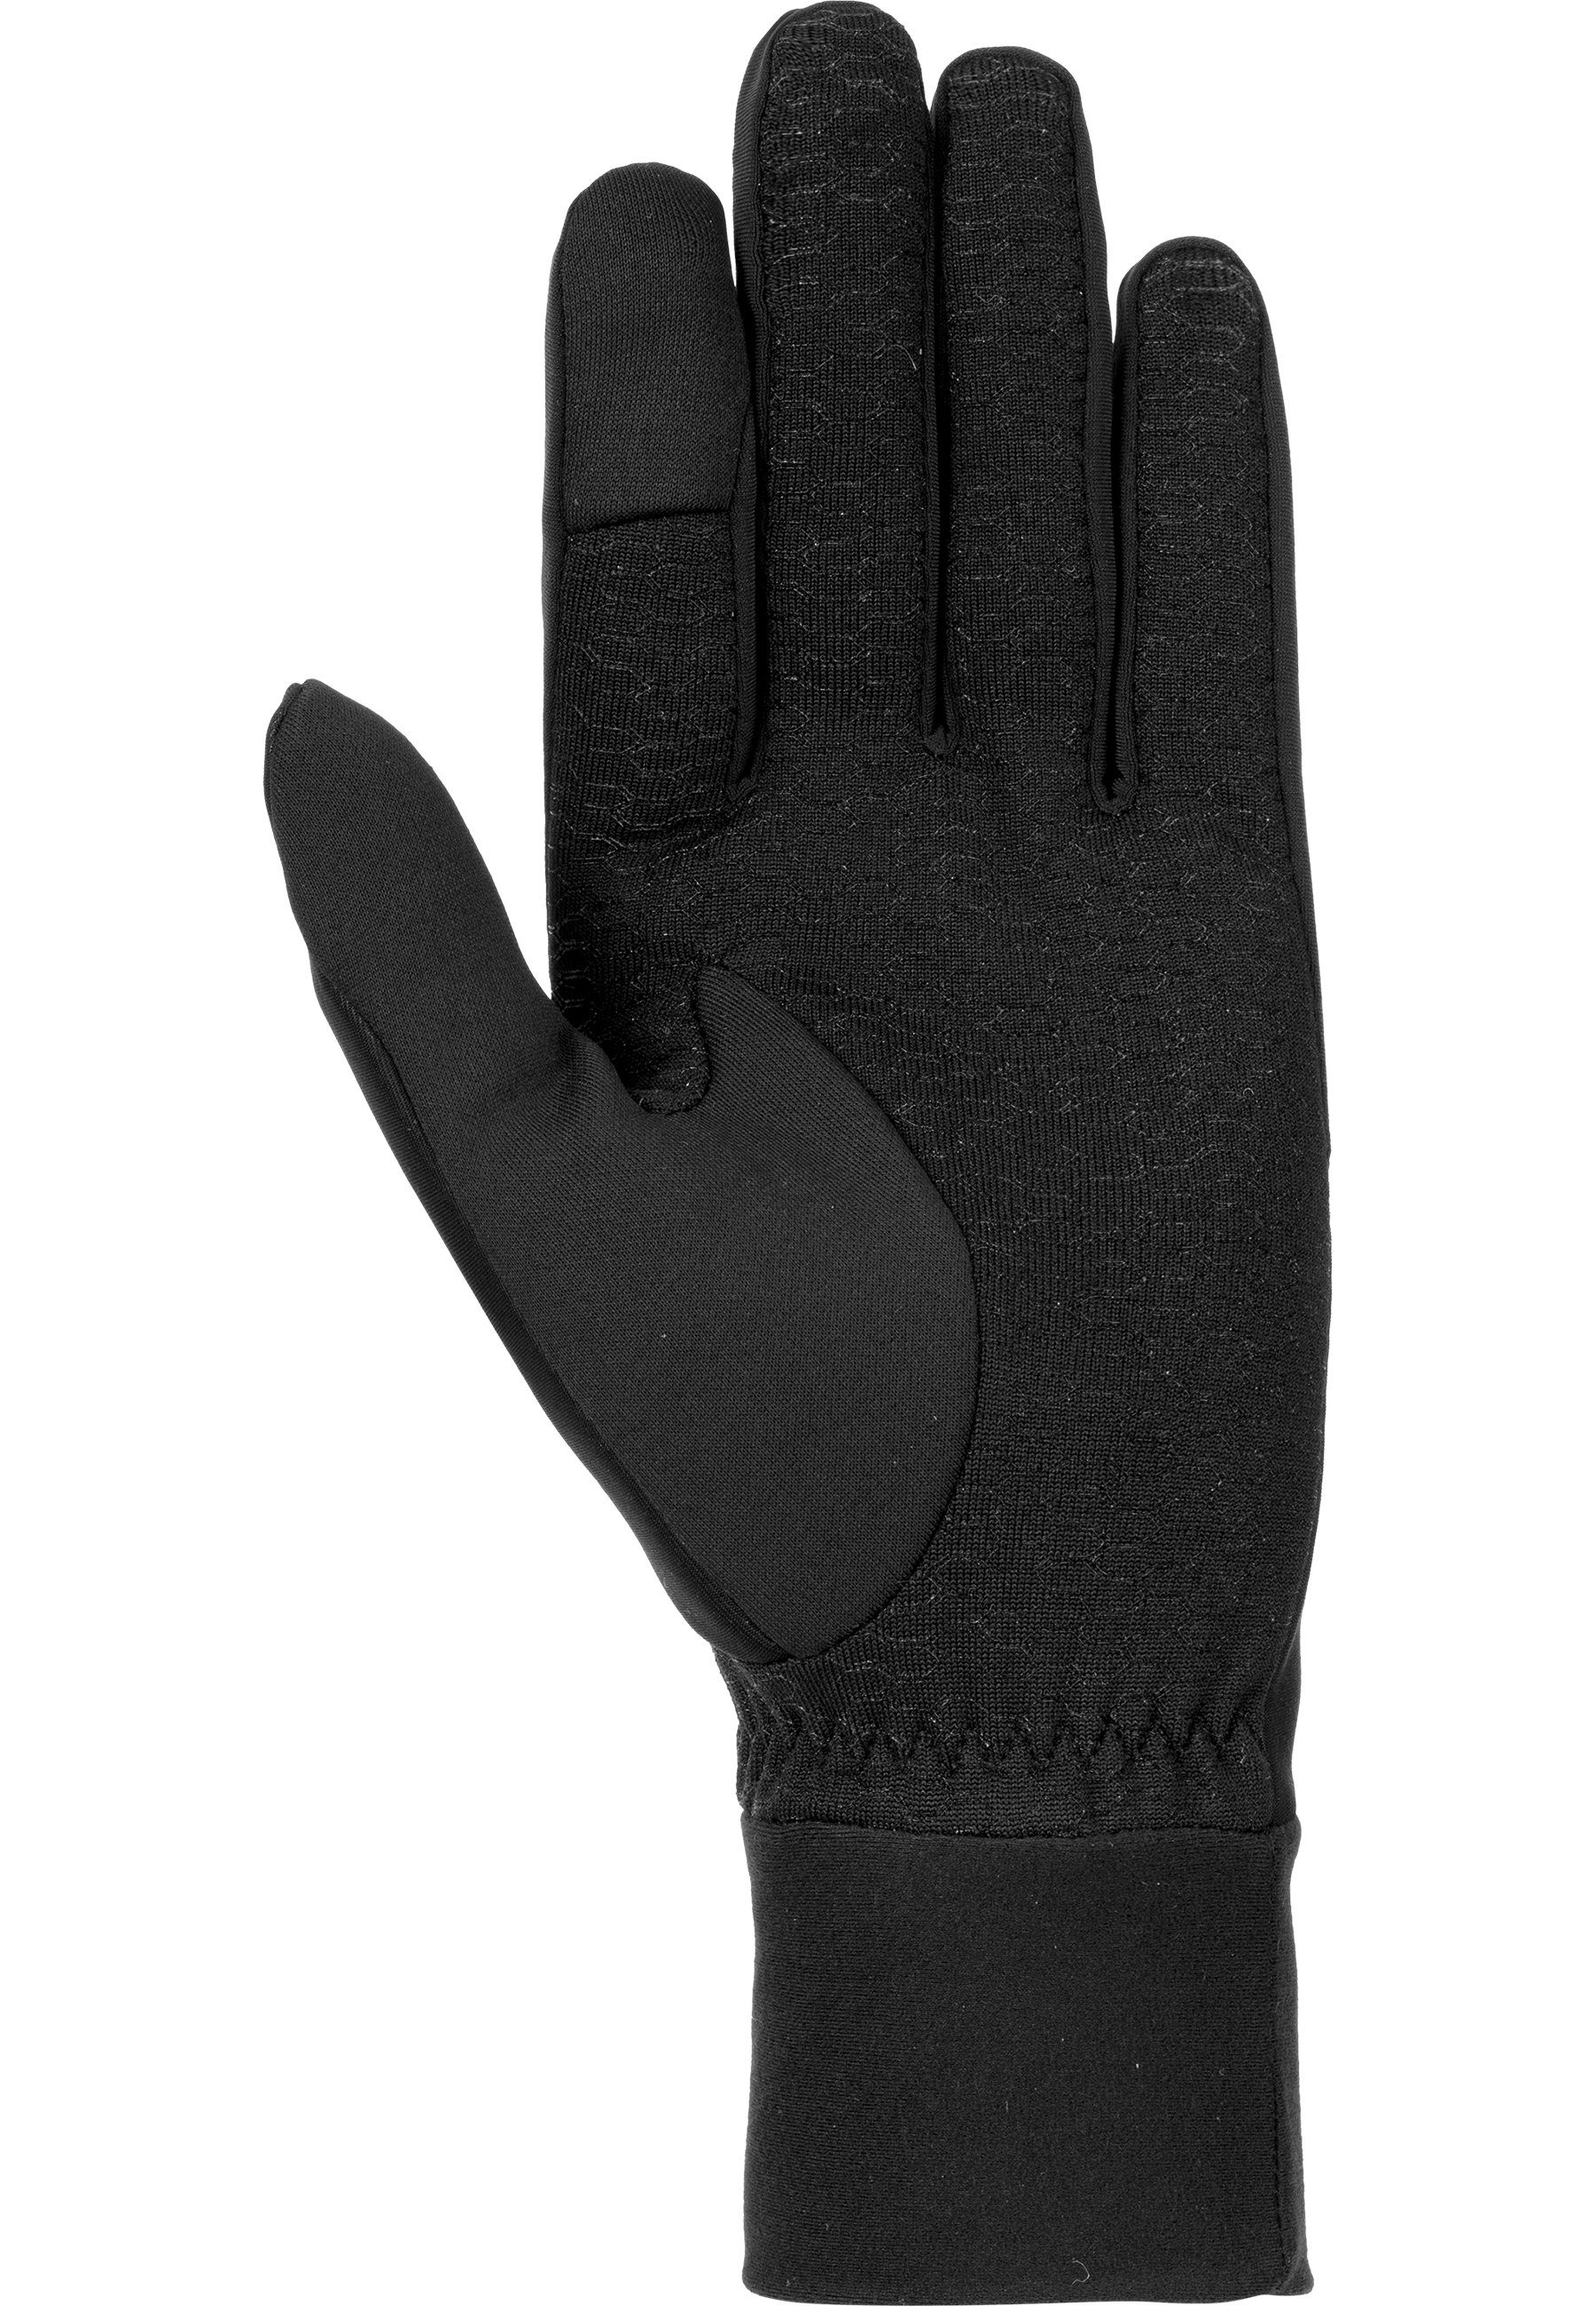 Skihandschuhe Touch-Tec GORE-TEX® schwarz-silberfarben mit Technologie INFINIUM™ praktischer Reusch Karayel